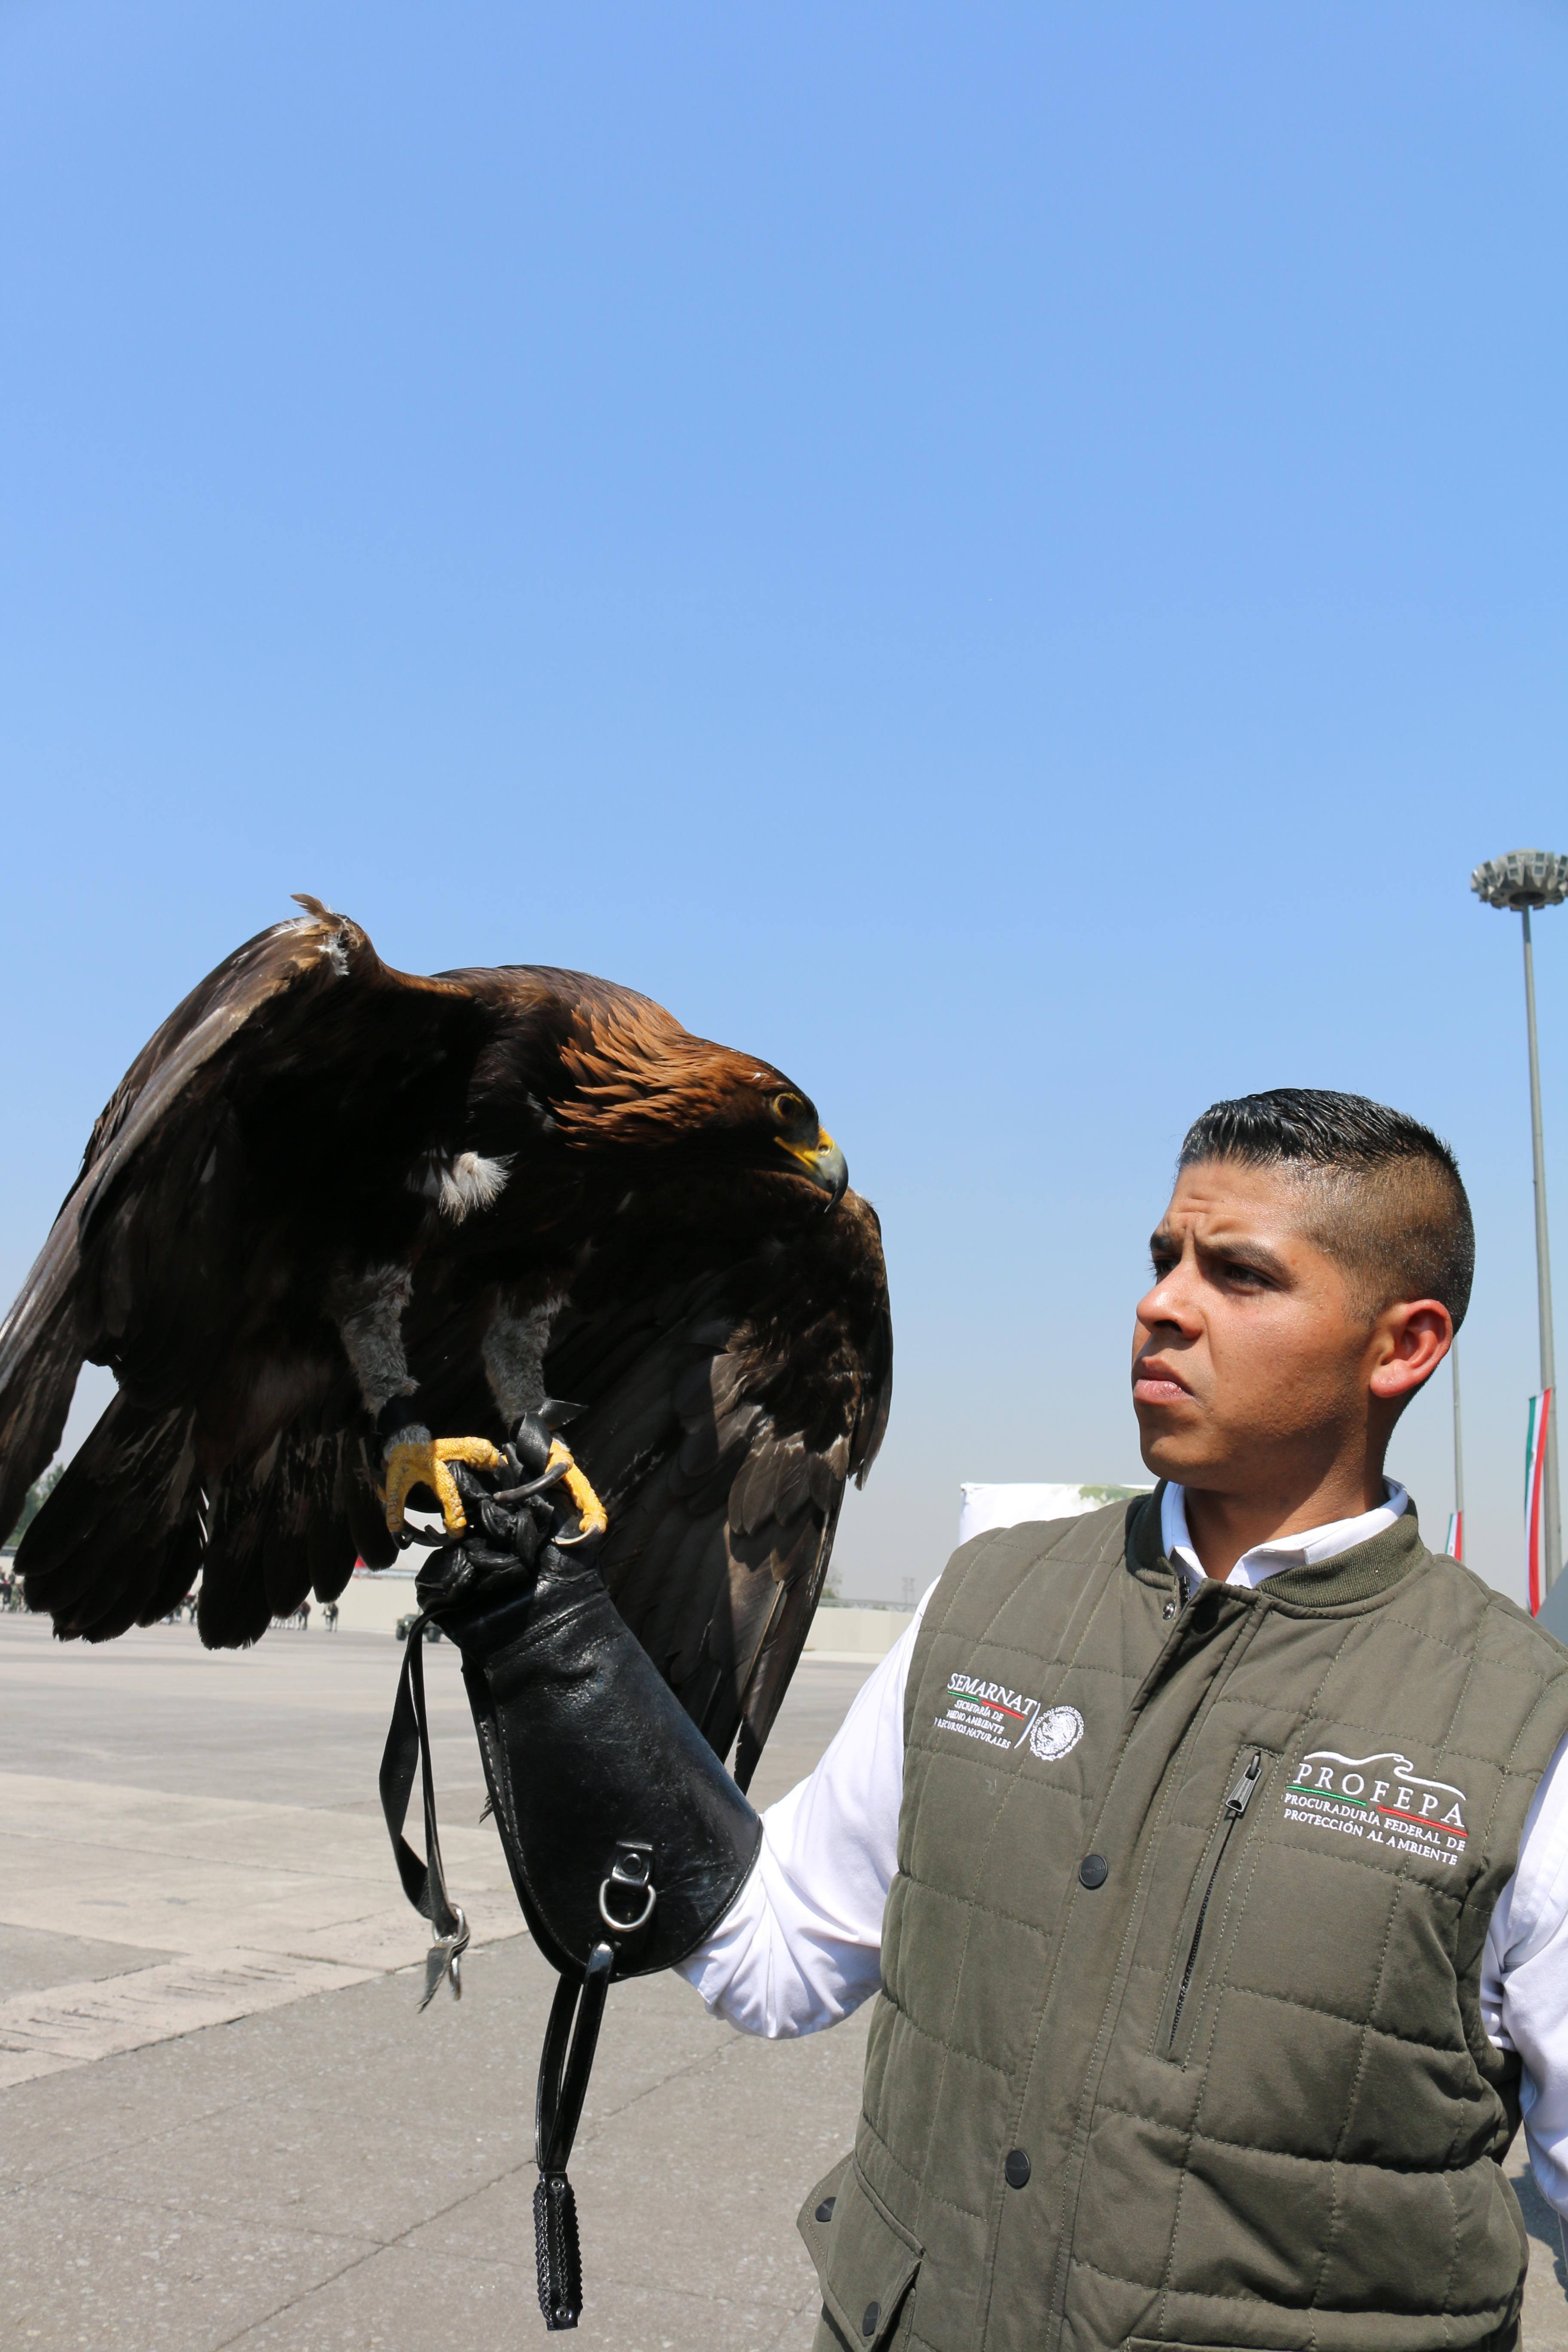 PROFEPA y SEDENA, en la celebración del Día Nacional del Águila Real, firmaron un convenio  que permitirá crear el “Centro Nacional de Control y Protección del Águila Real”, cuyo objetivo es la recepción, rehabilitación y liberación de ejemplares.